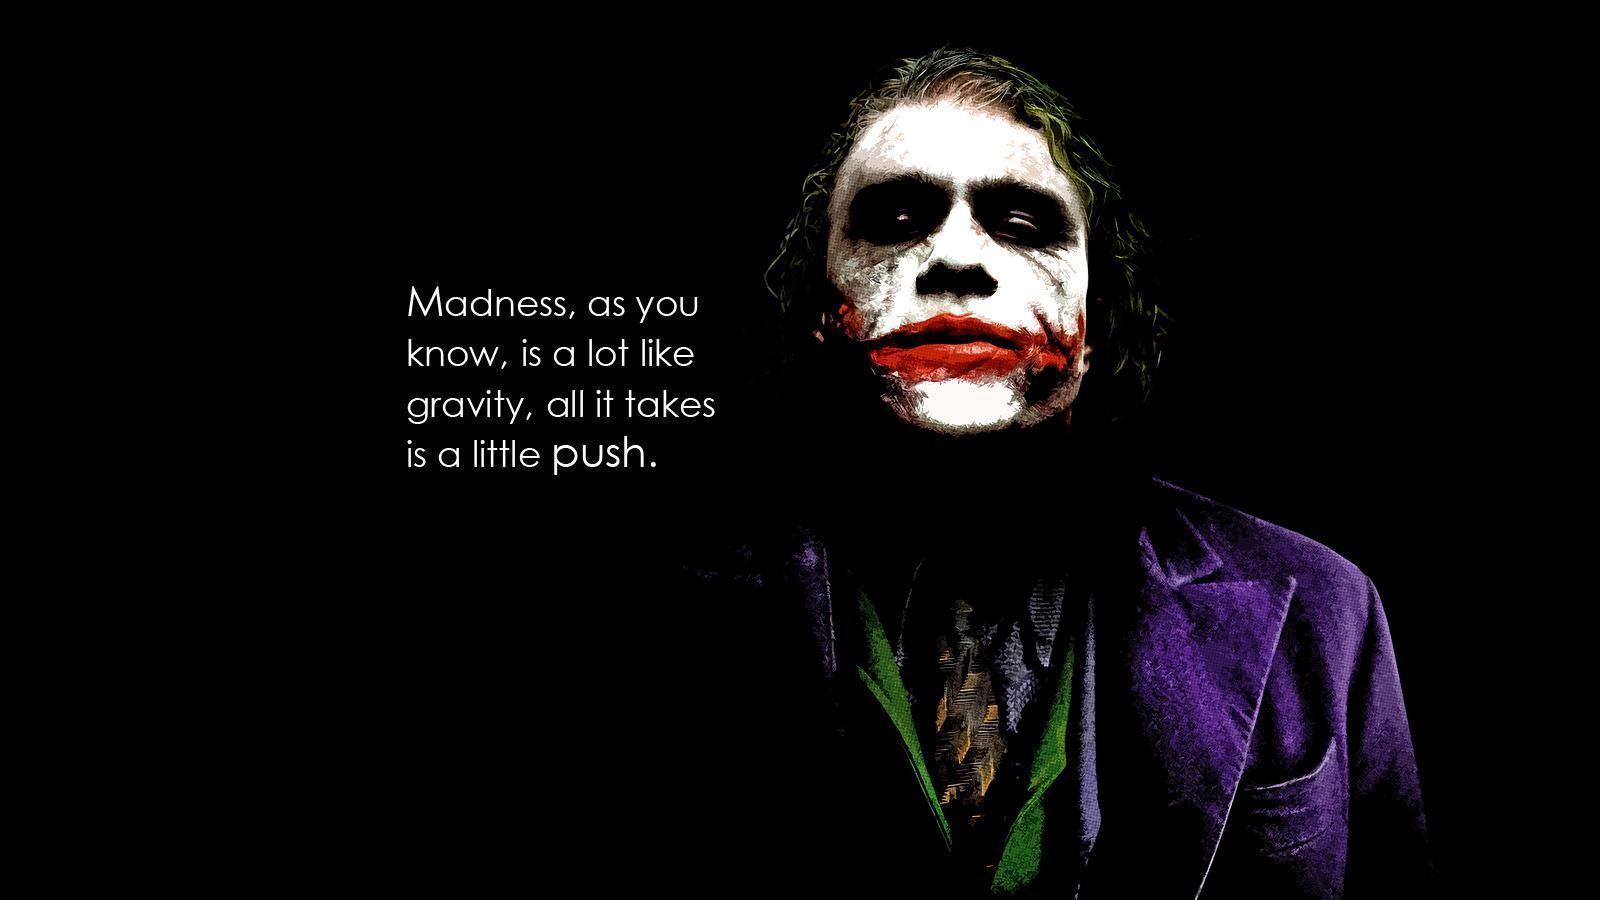 Best image about The Joker. Batman quotes